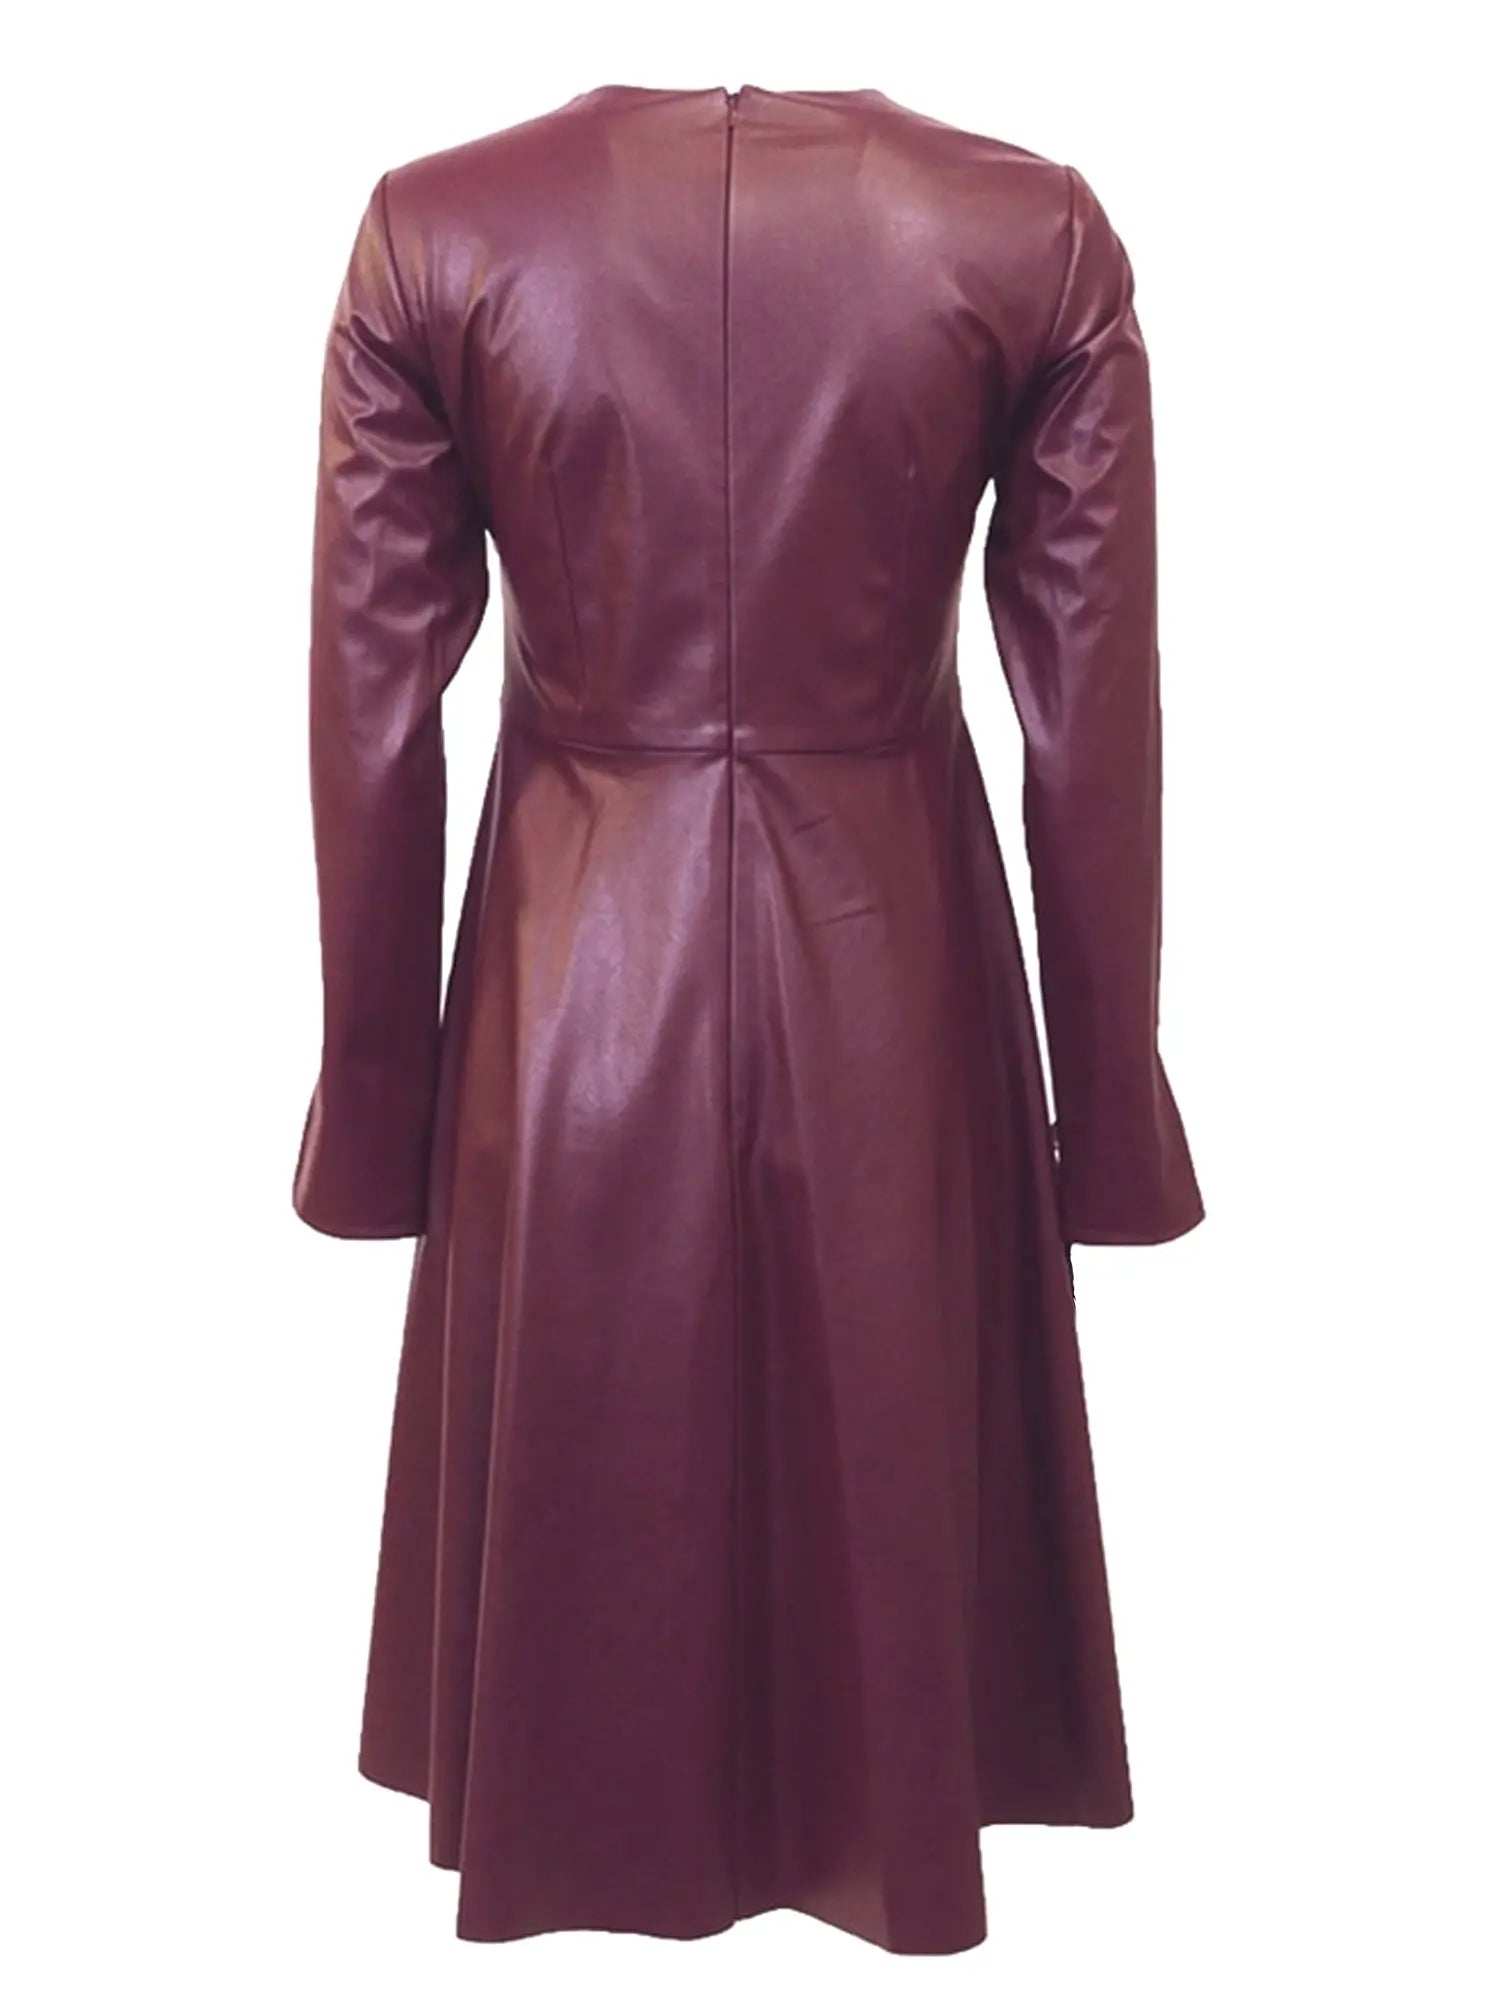 C&M Leather A-line Applique Dress vendor-unknown